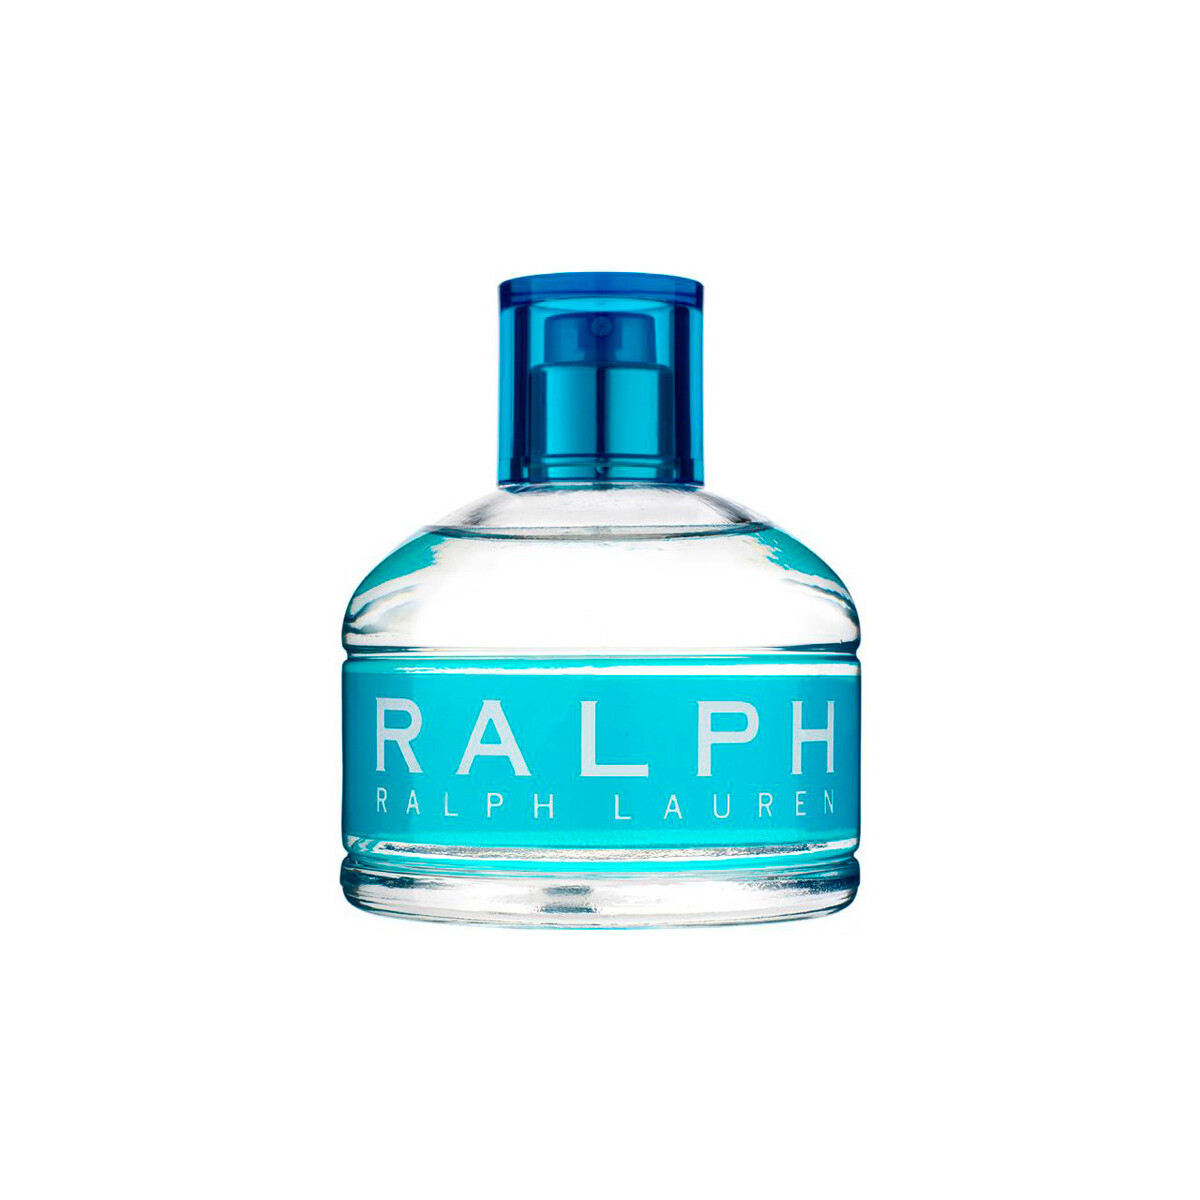 Beauty Damen Kölnisch Wasser Ralph Lauren Ralph - köln - 100ml - VERDAMPFER Ralph - cologne - 100ml - spray